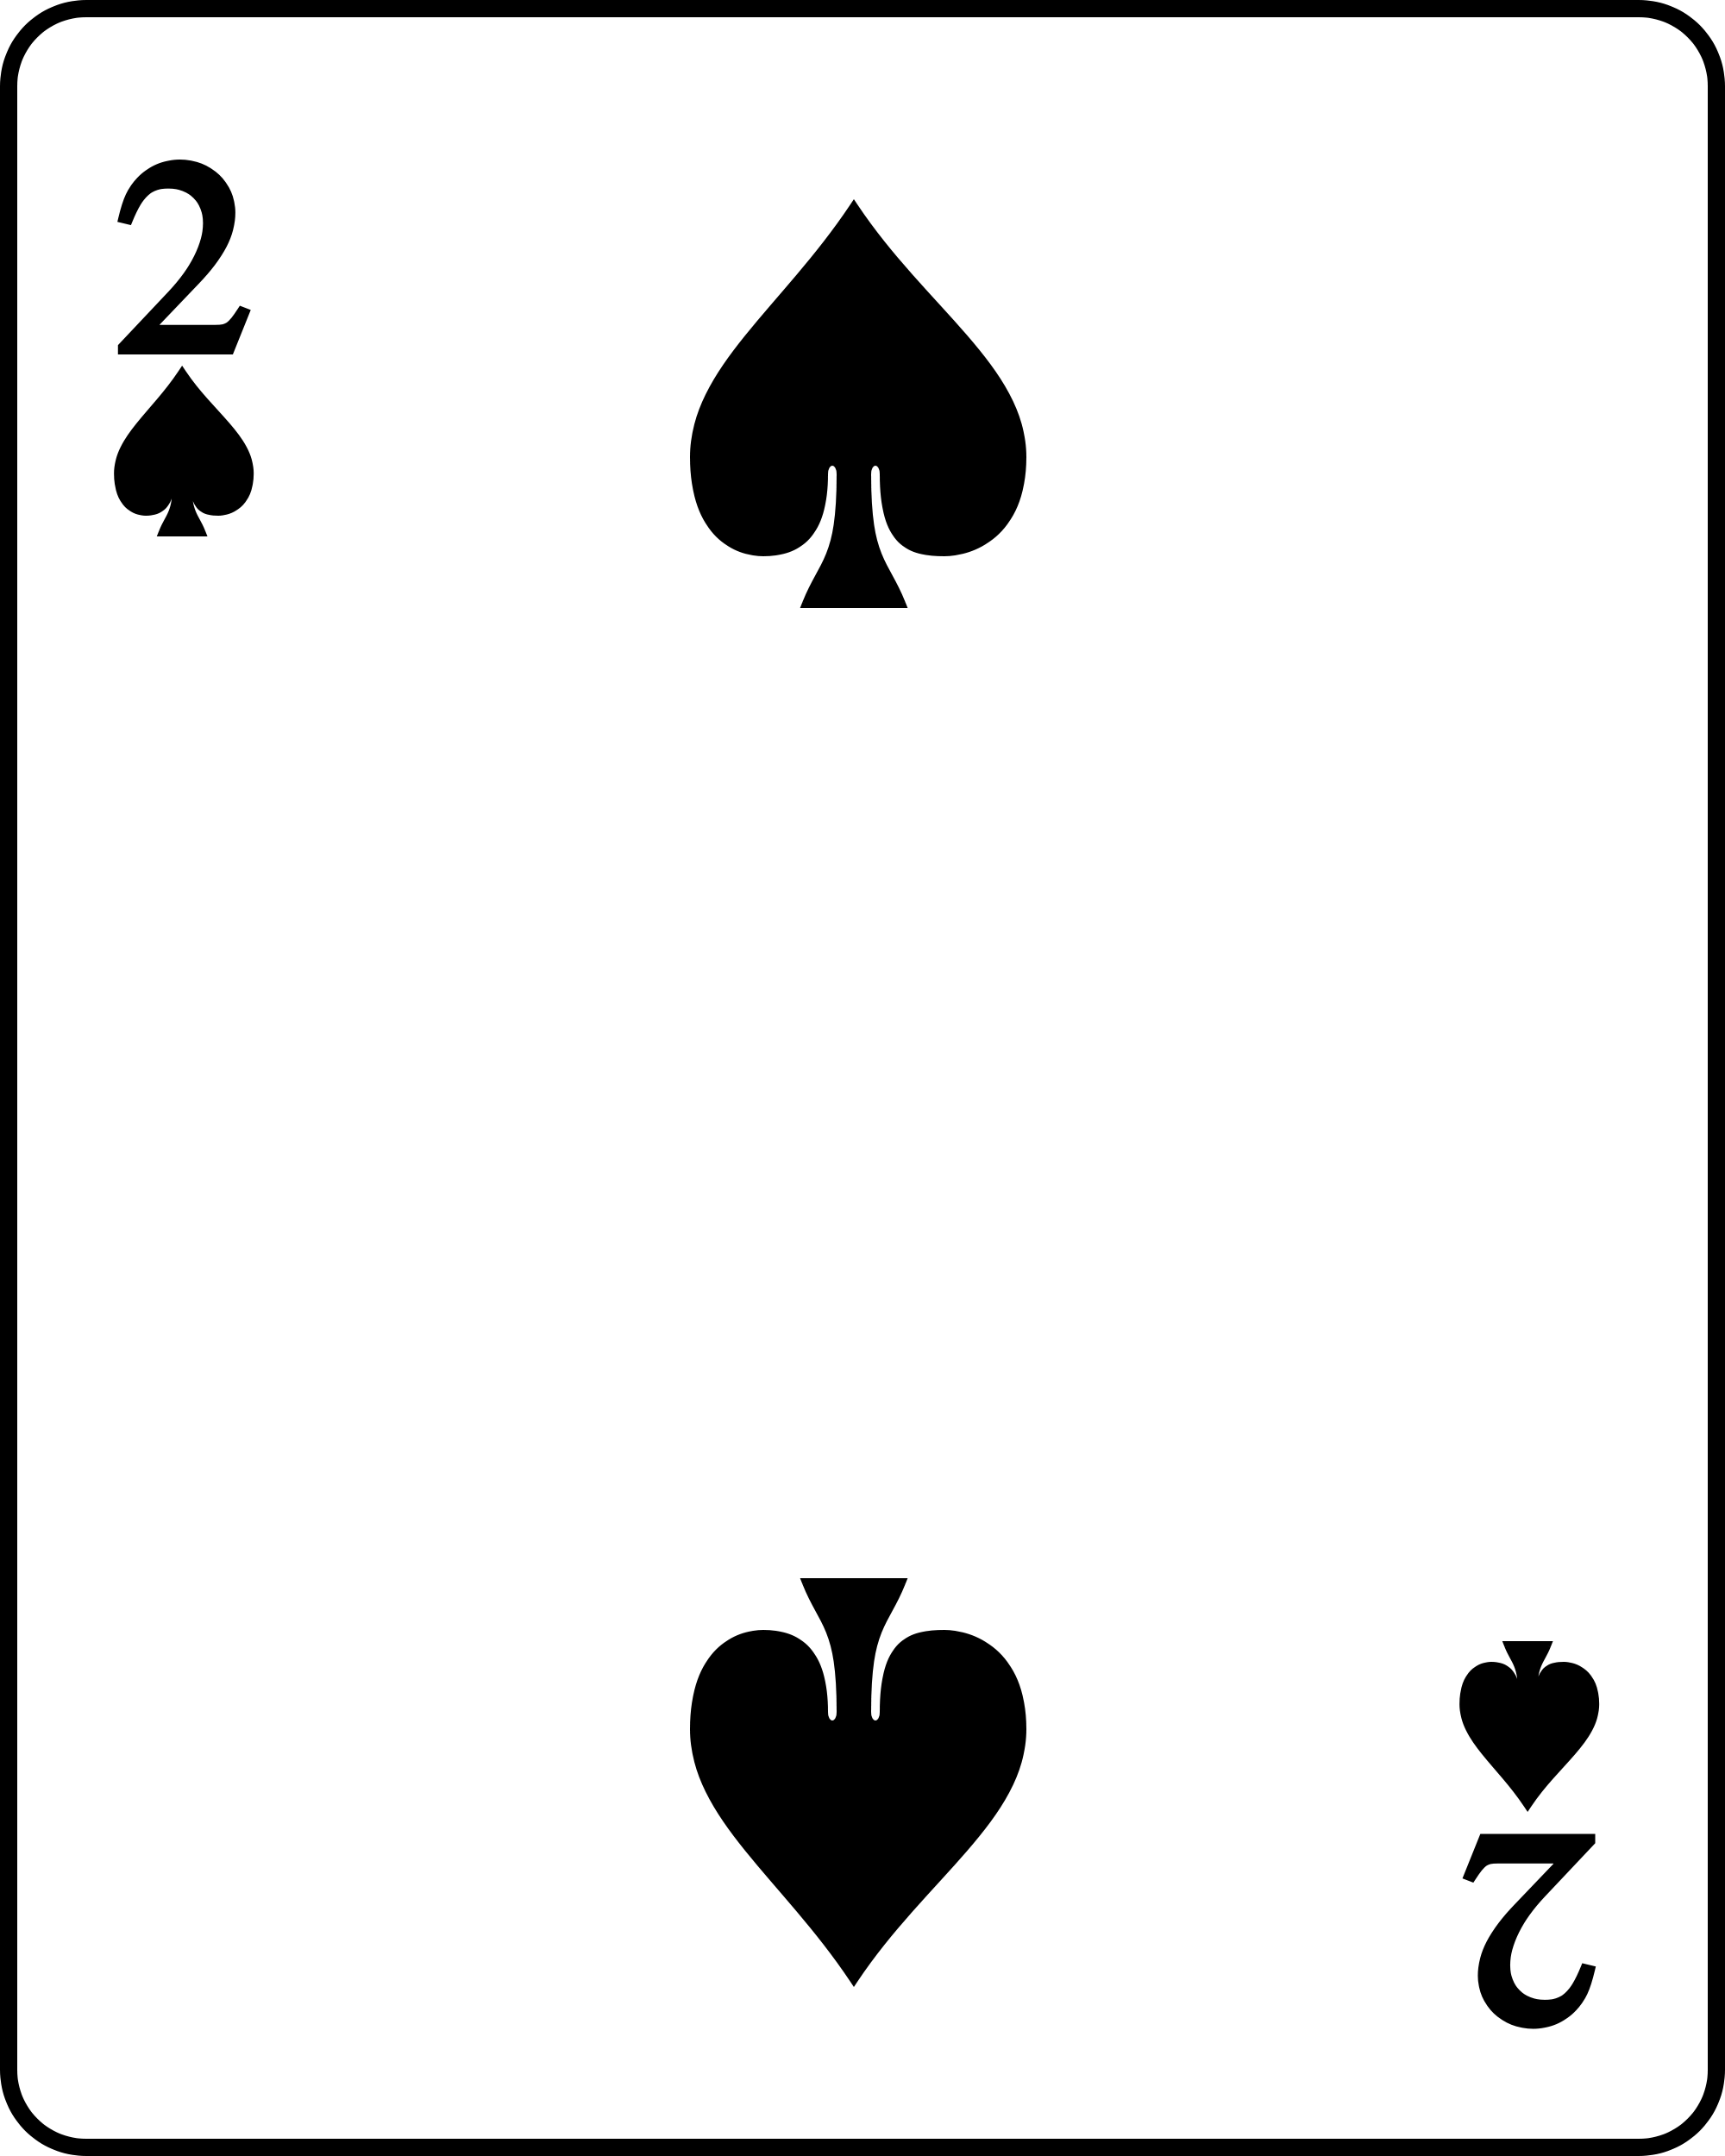 File:Playing card spade 2.svg